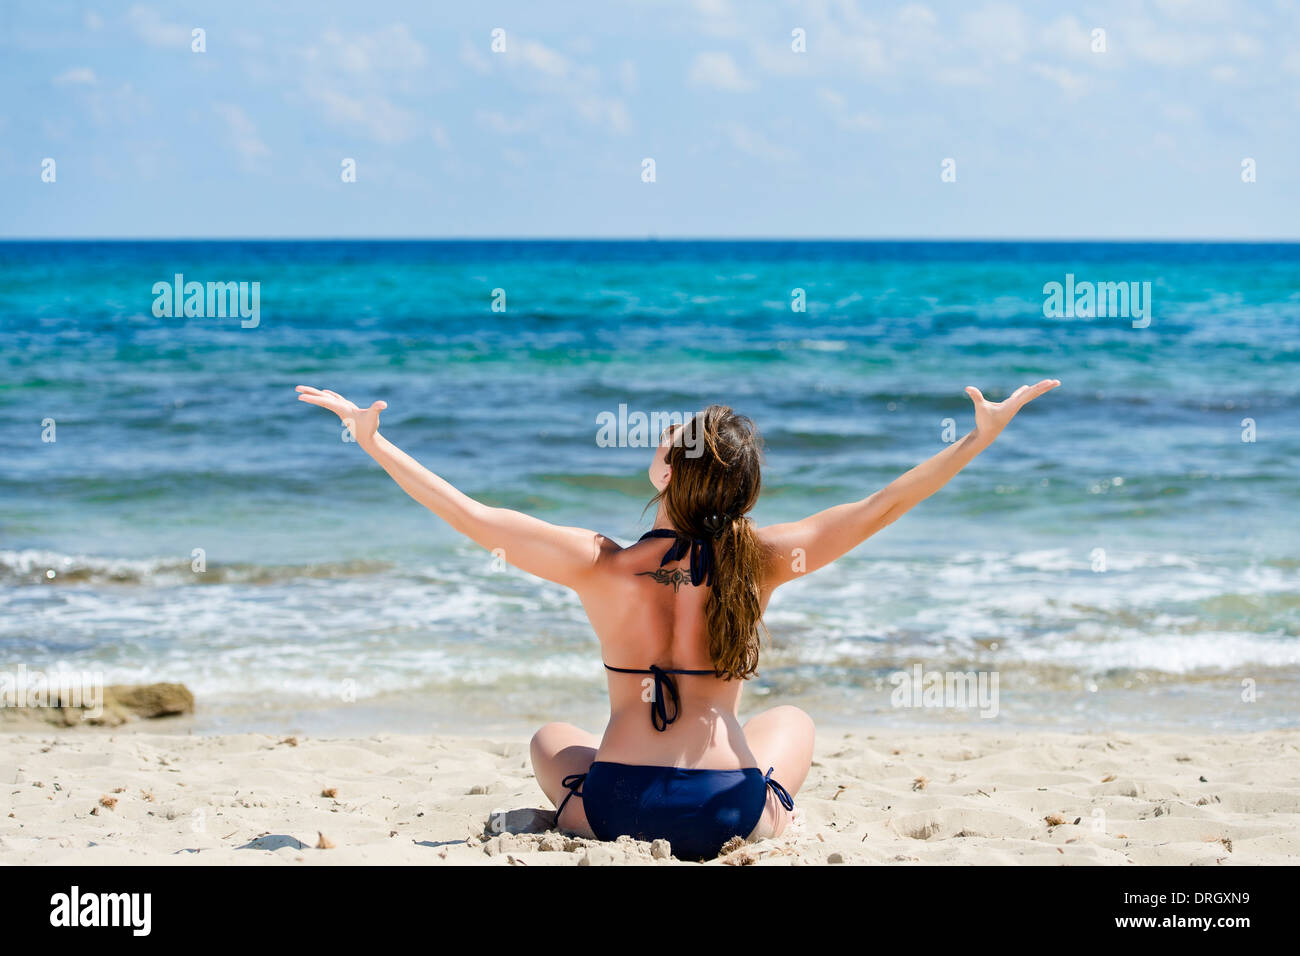 Frau im Bikini genießt den Urlaub am Strand, Ibiza, Spanien - woman makes holiday at the beach, Ibiza, Spain Stock Photo